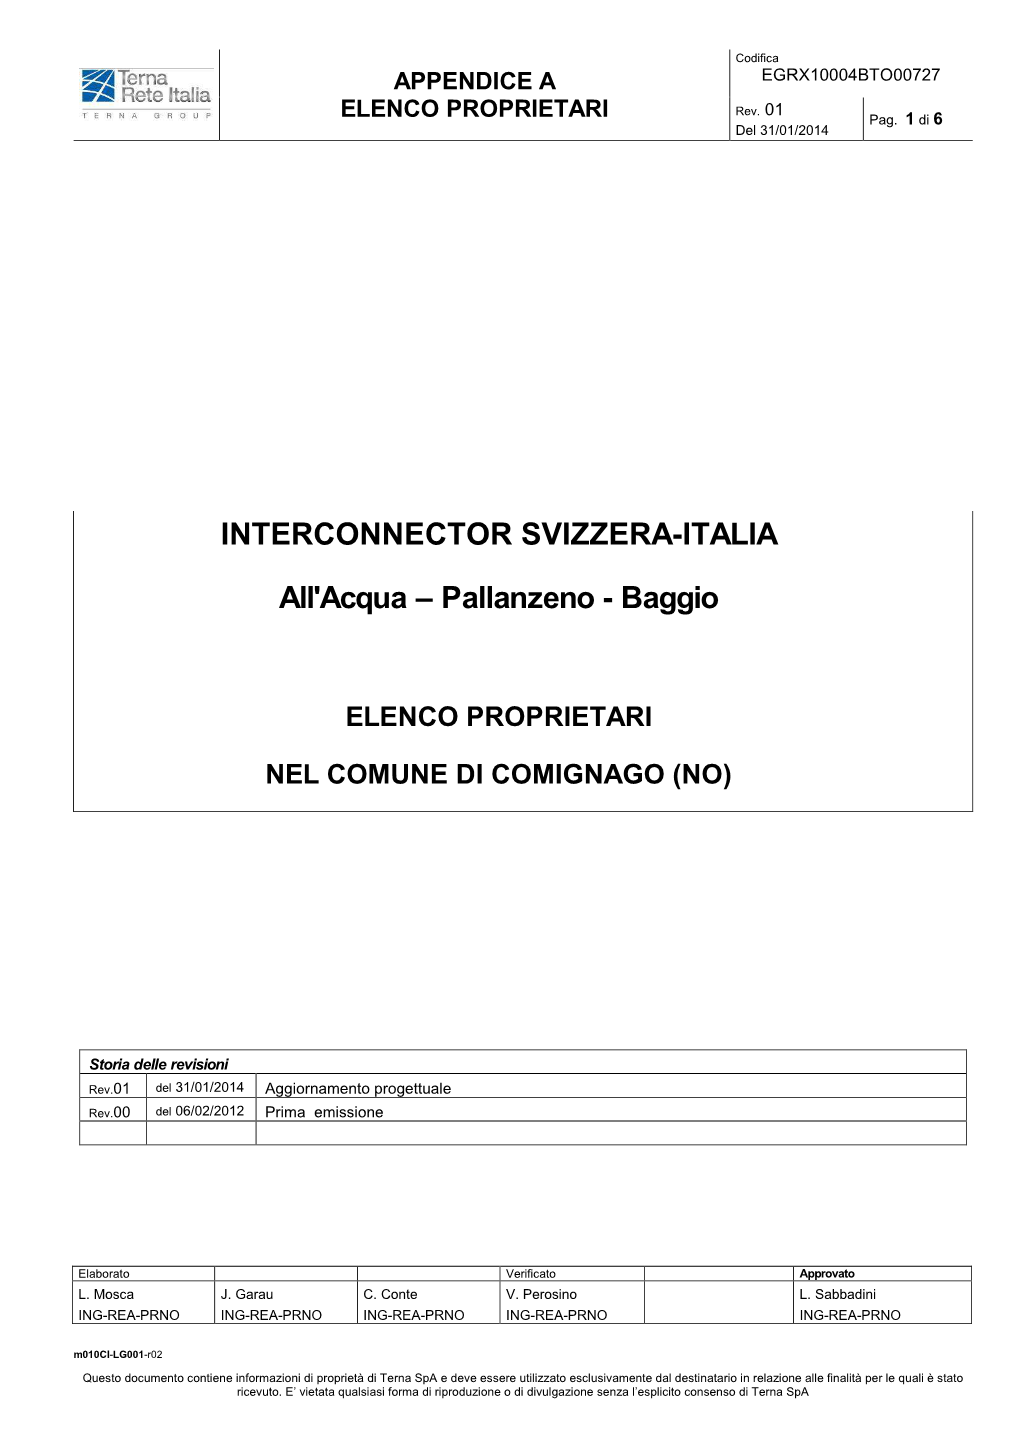 INTERCONNECTOR SVIZZERA-ITALIA All'acqua